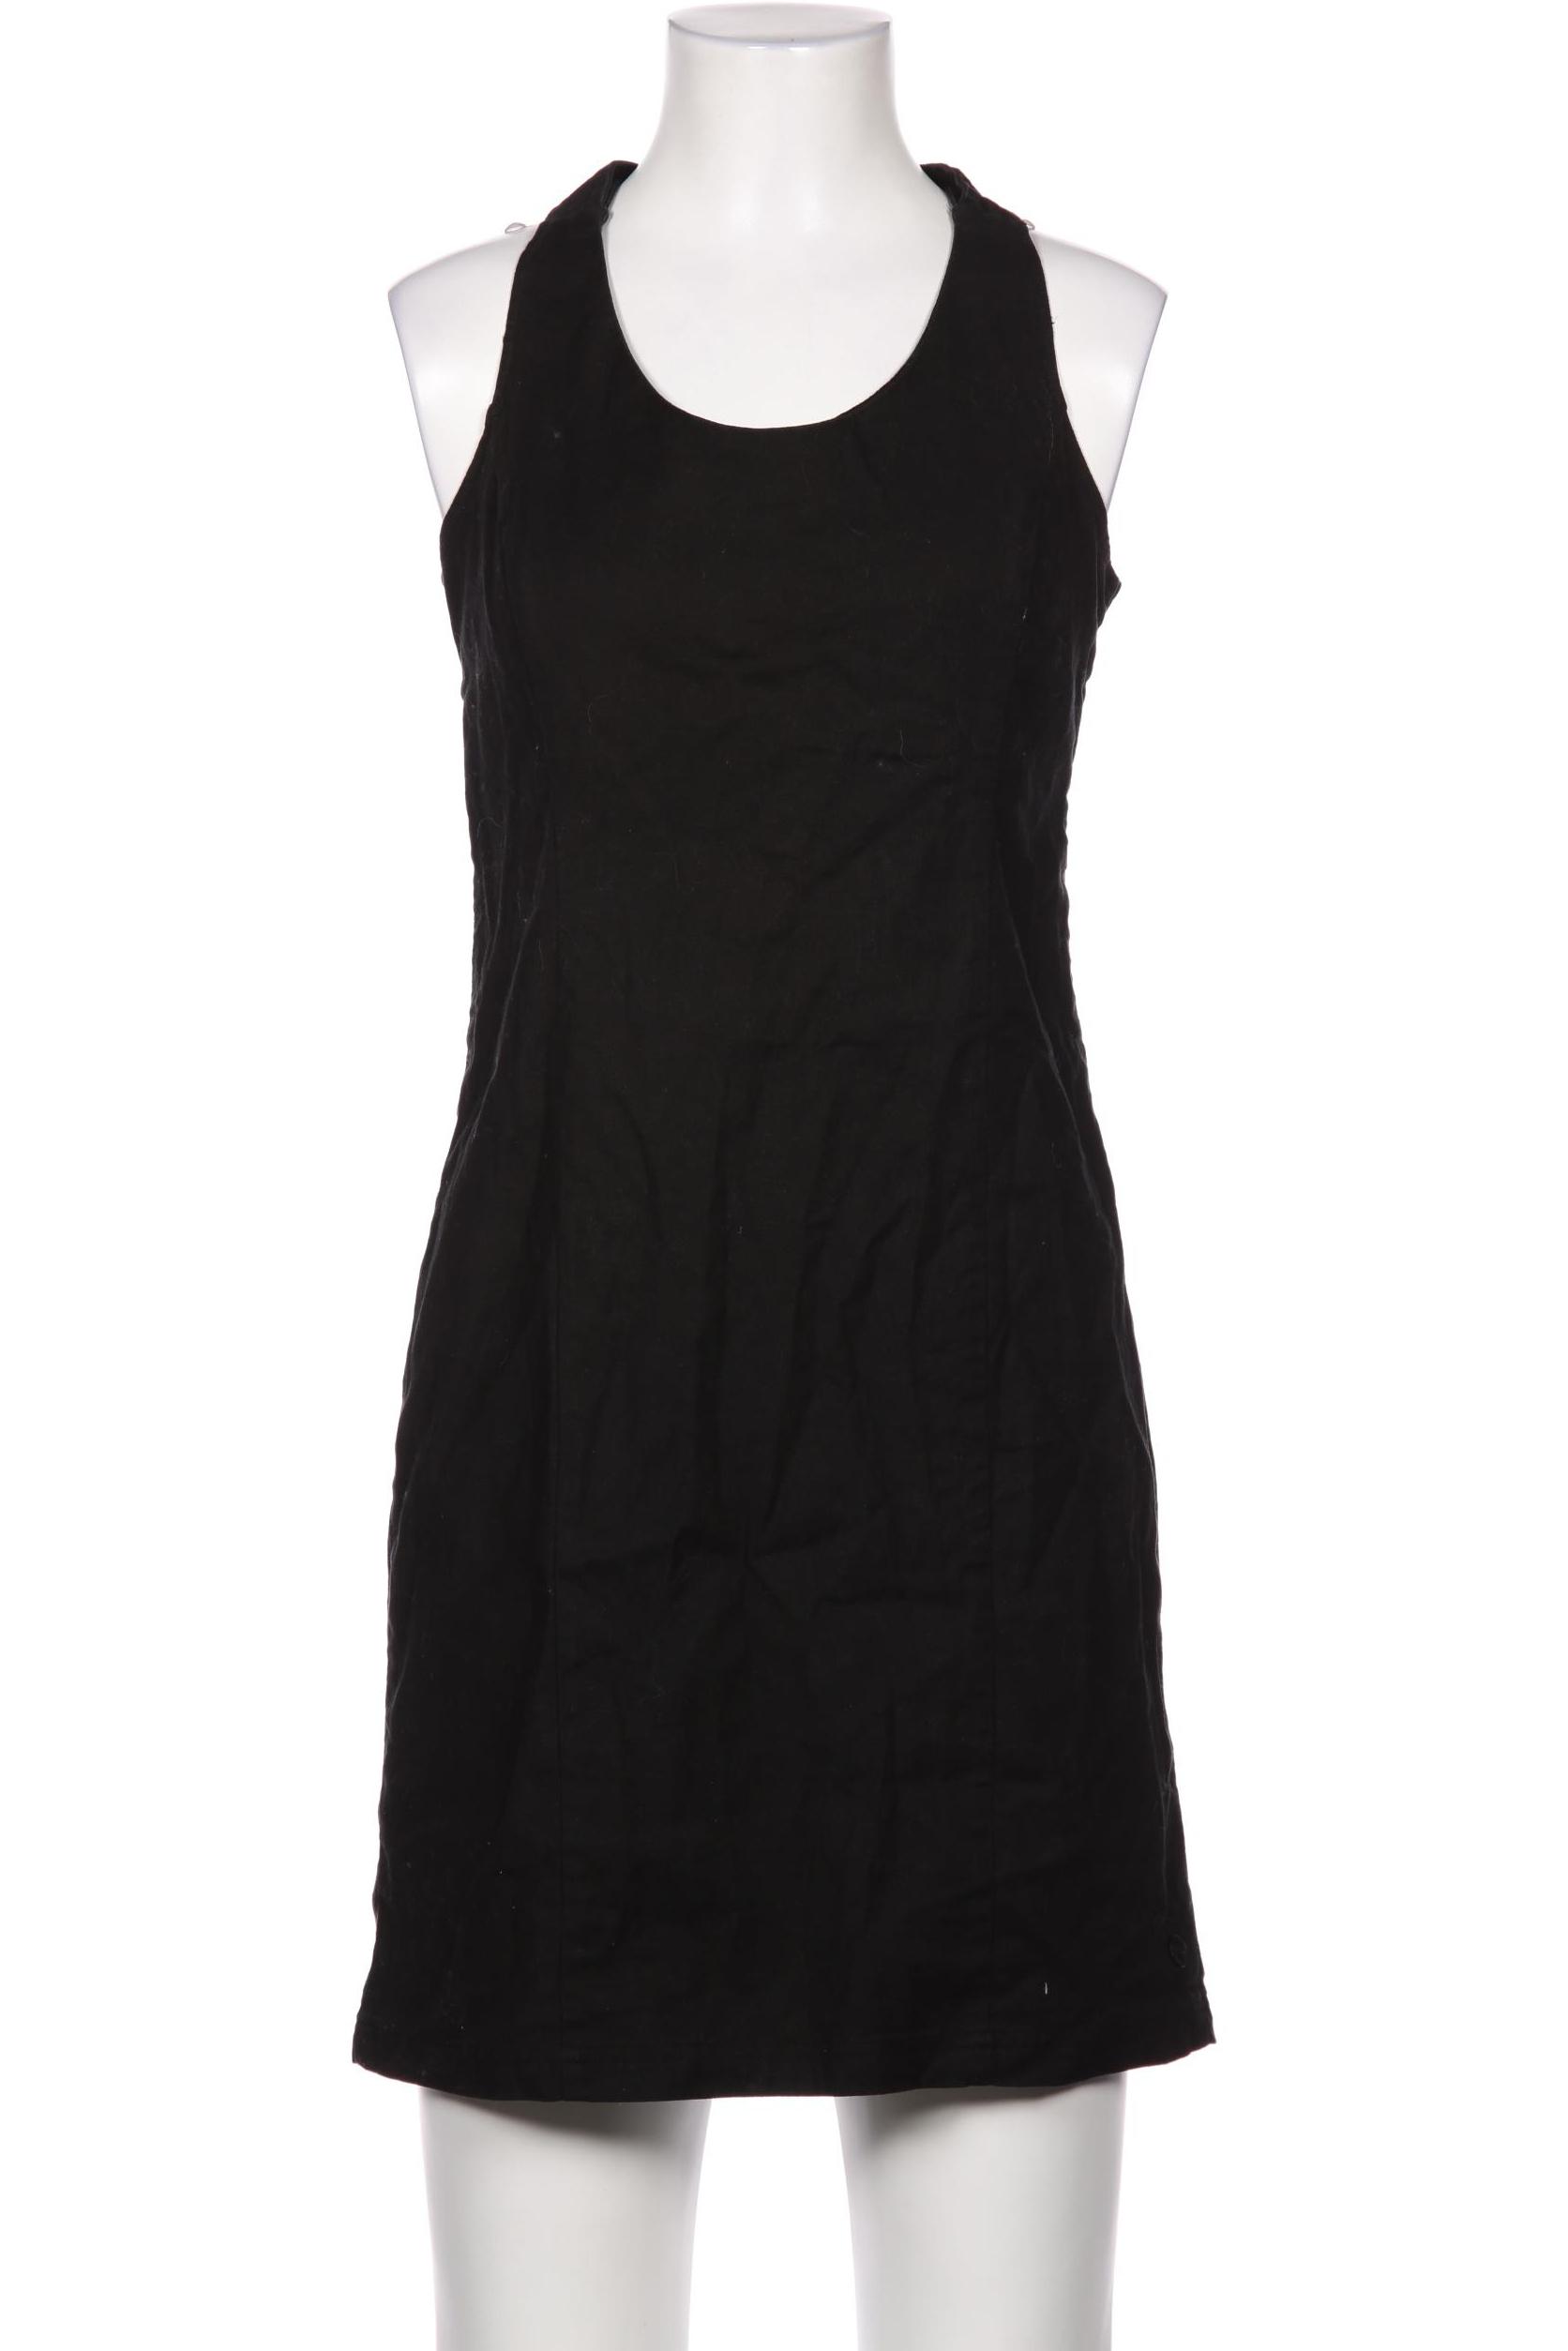 Skfk Damen Kleid, schwarz, Gr. 32 von SKFK